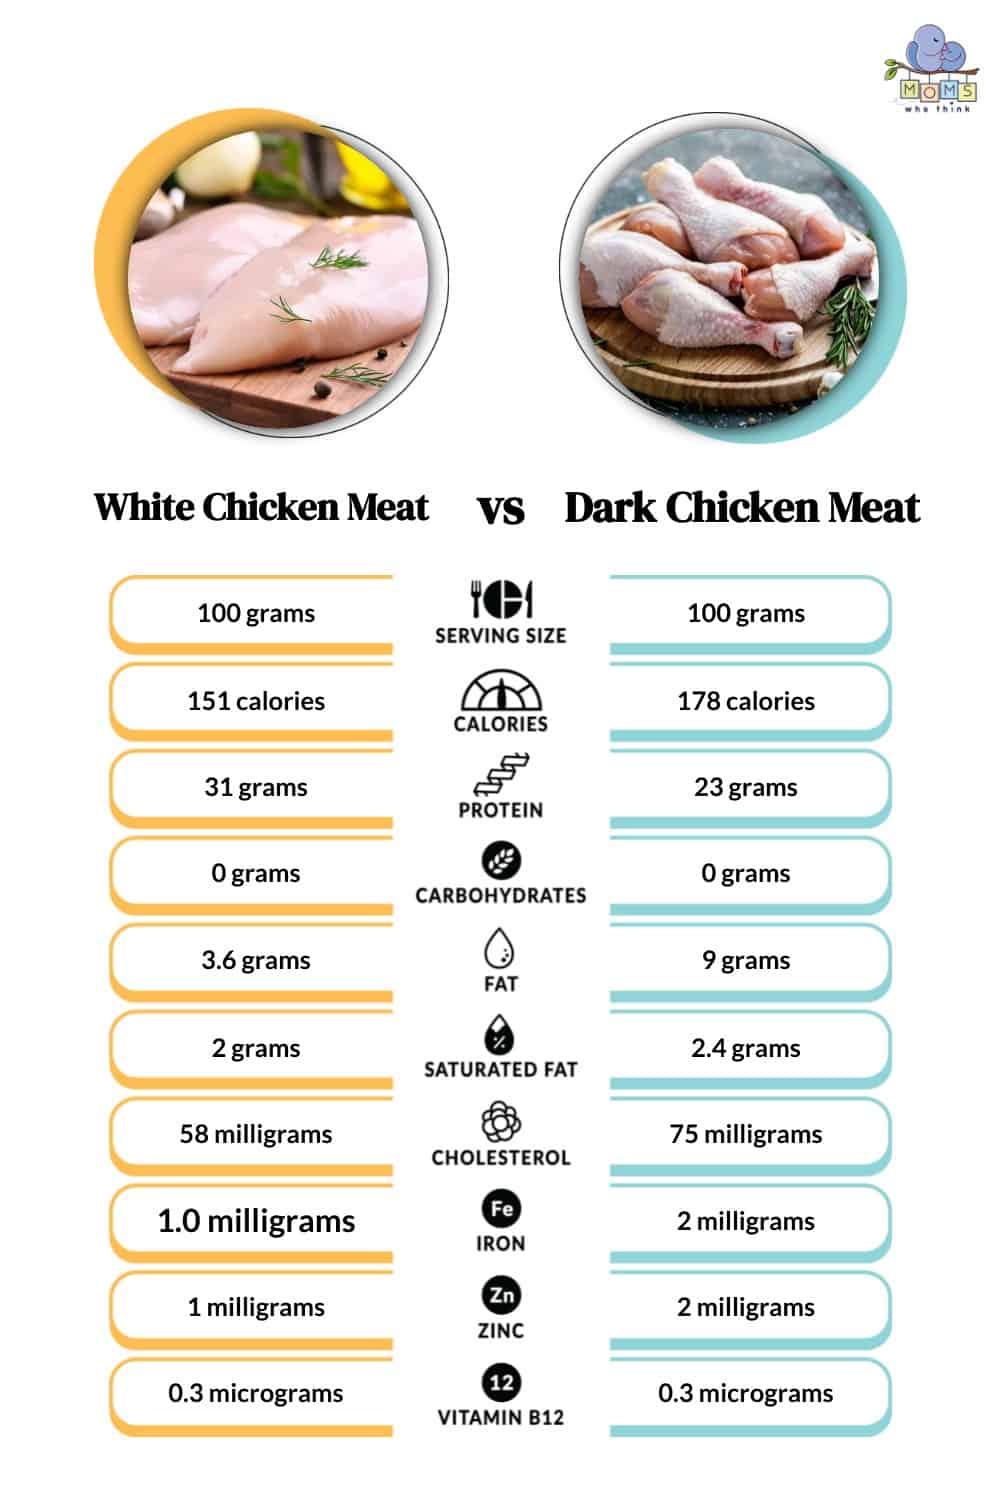 Is White Chicken Meat Healthier Than Dark Chicken Meat